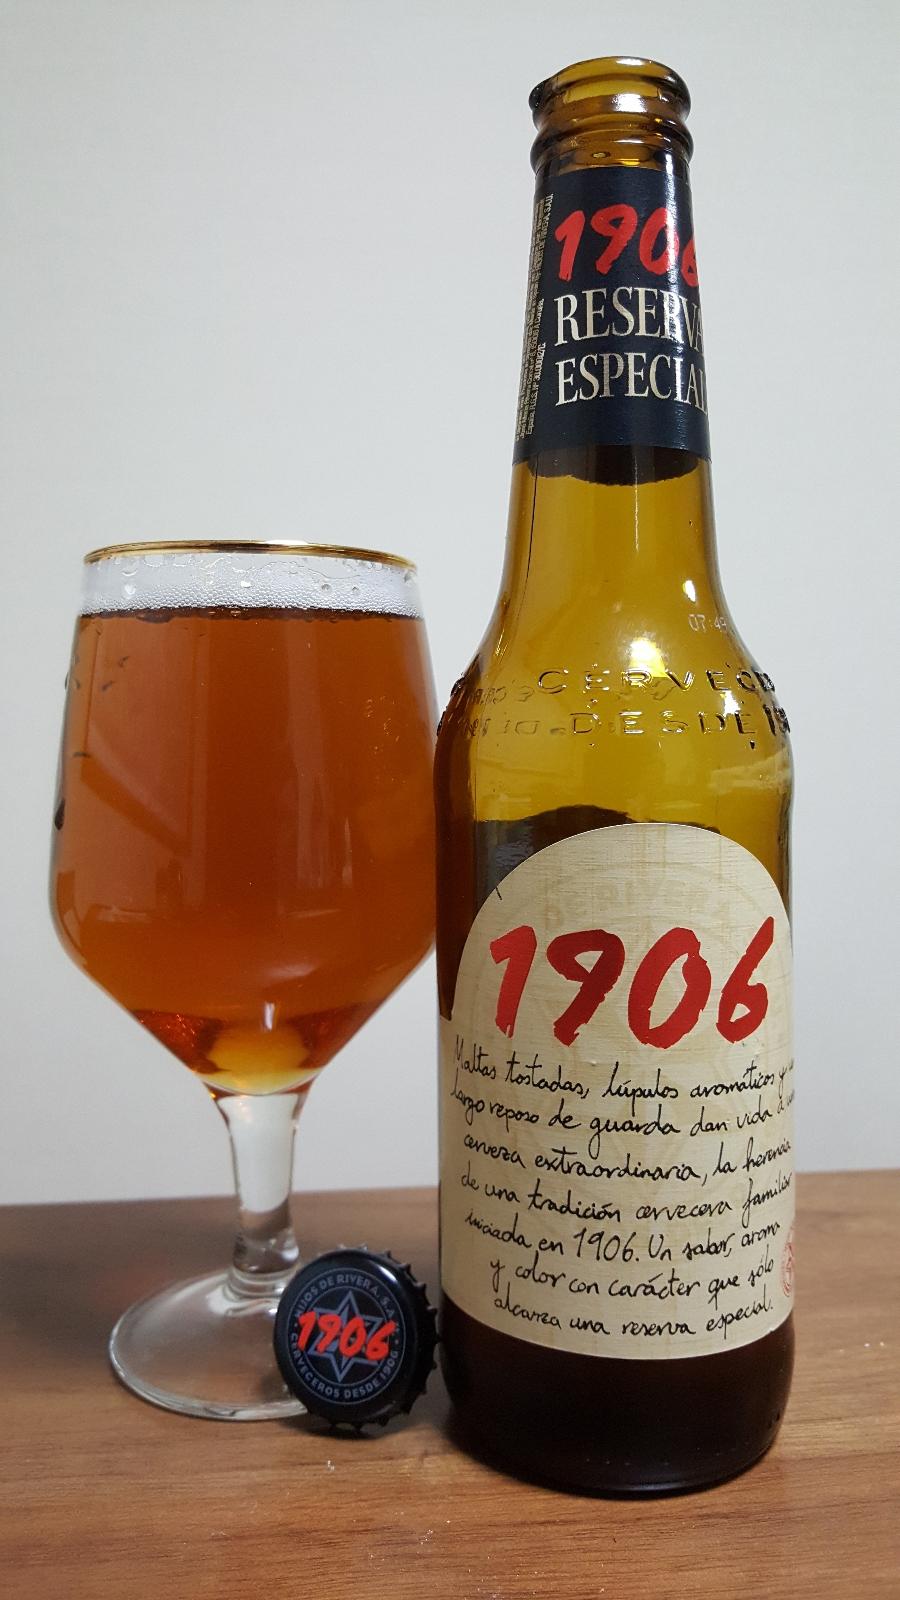 Estrella Galicia 1906 Reserva Especial